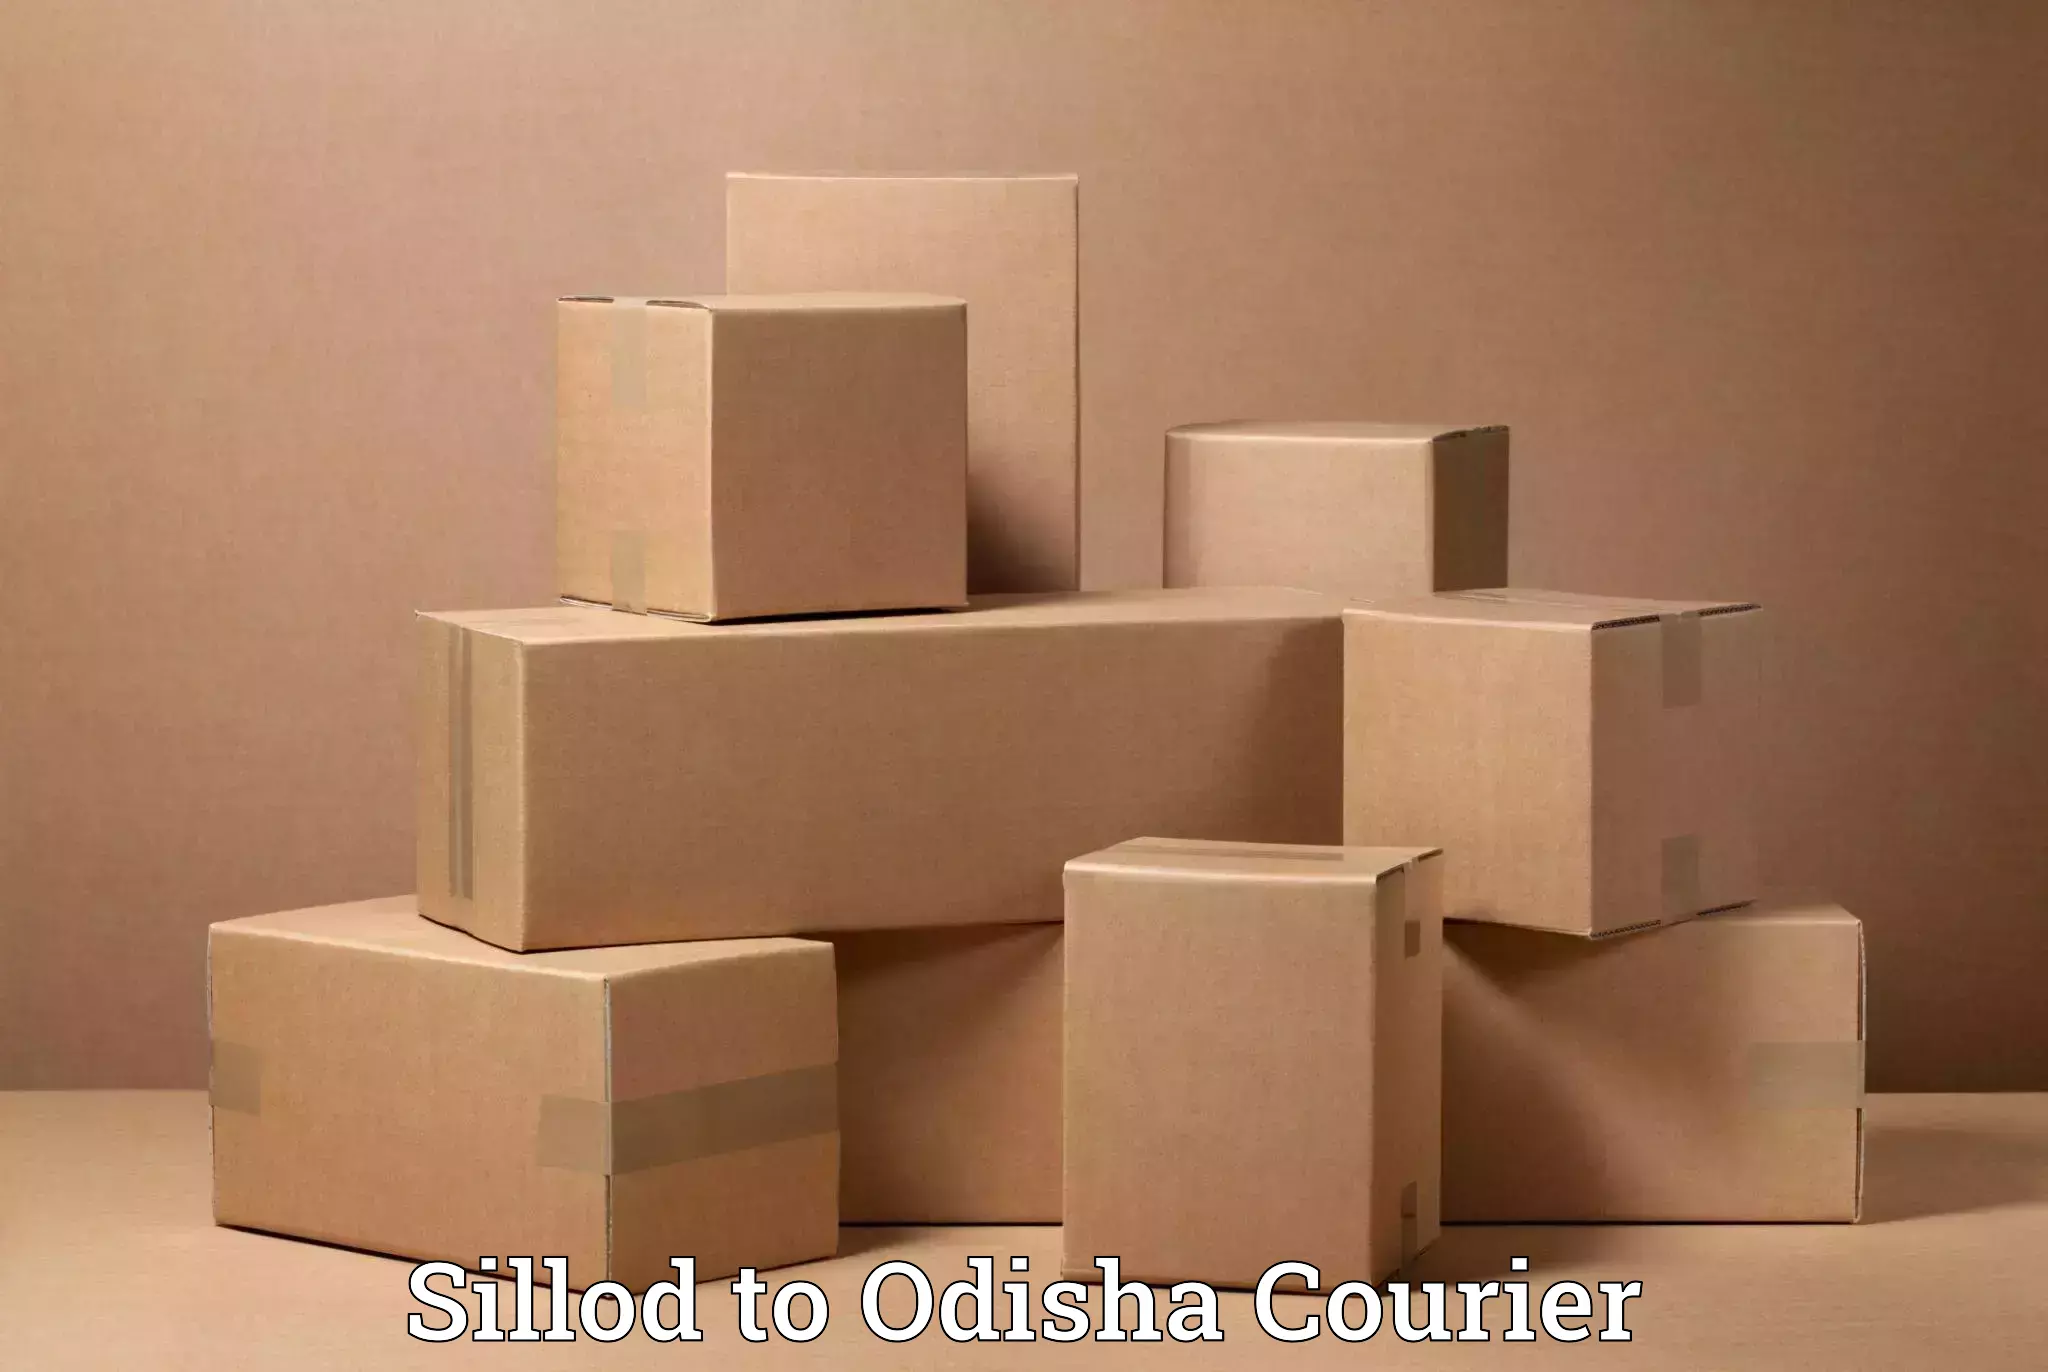 Professional furniture movers Sillod to Odisha